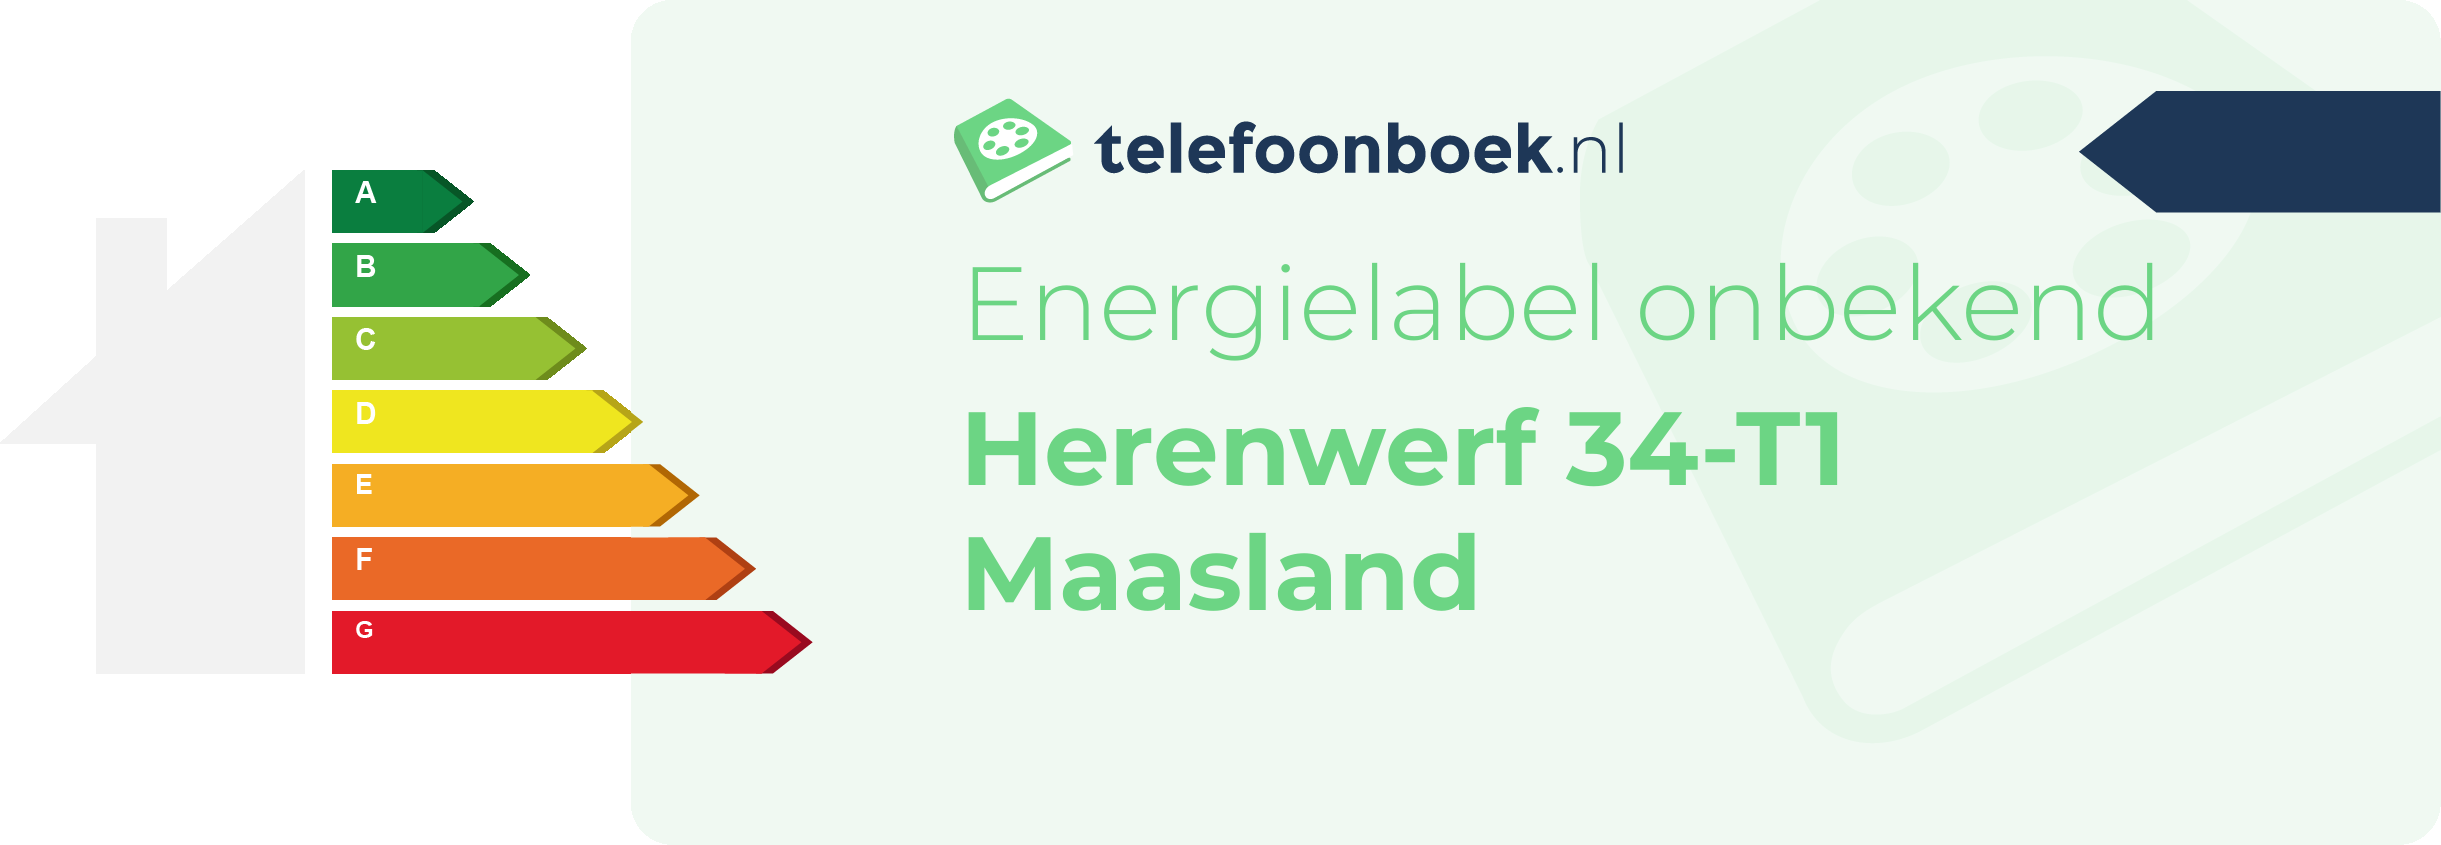 Energielabel Herenwerf 34-T1 Maasland